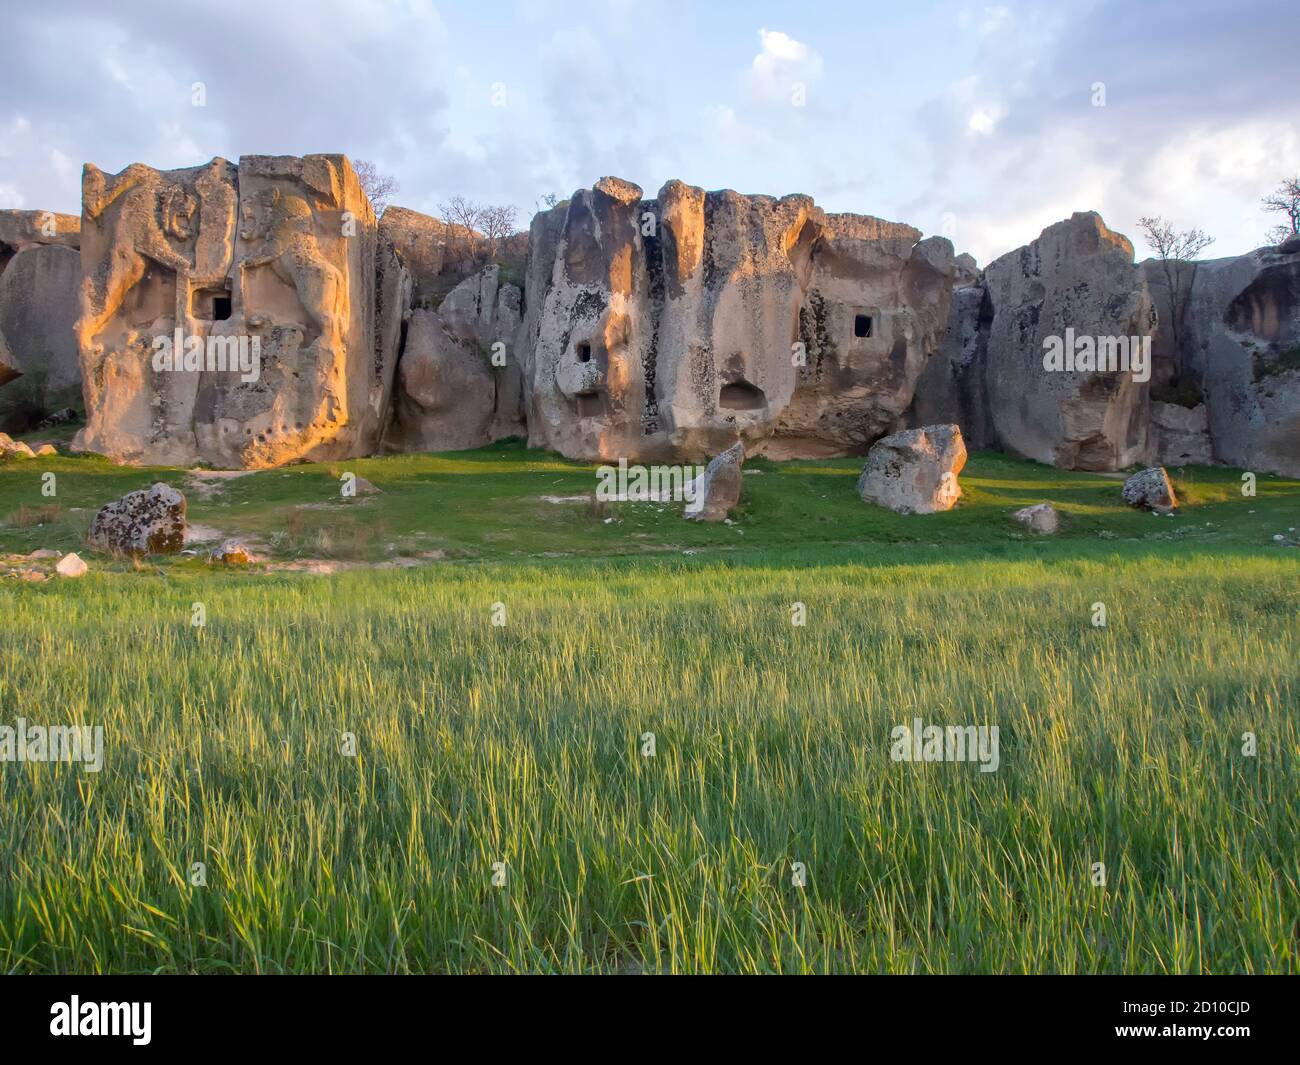 Der andere Name ist Lion Sanctuary. Schlangenstein.Phrygia-Tal. Stockfoto